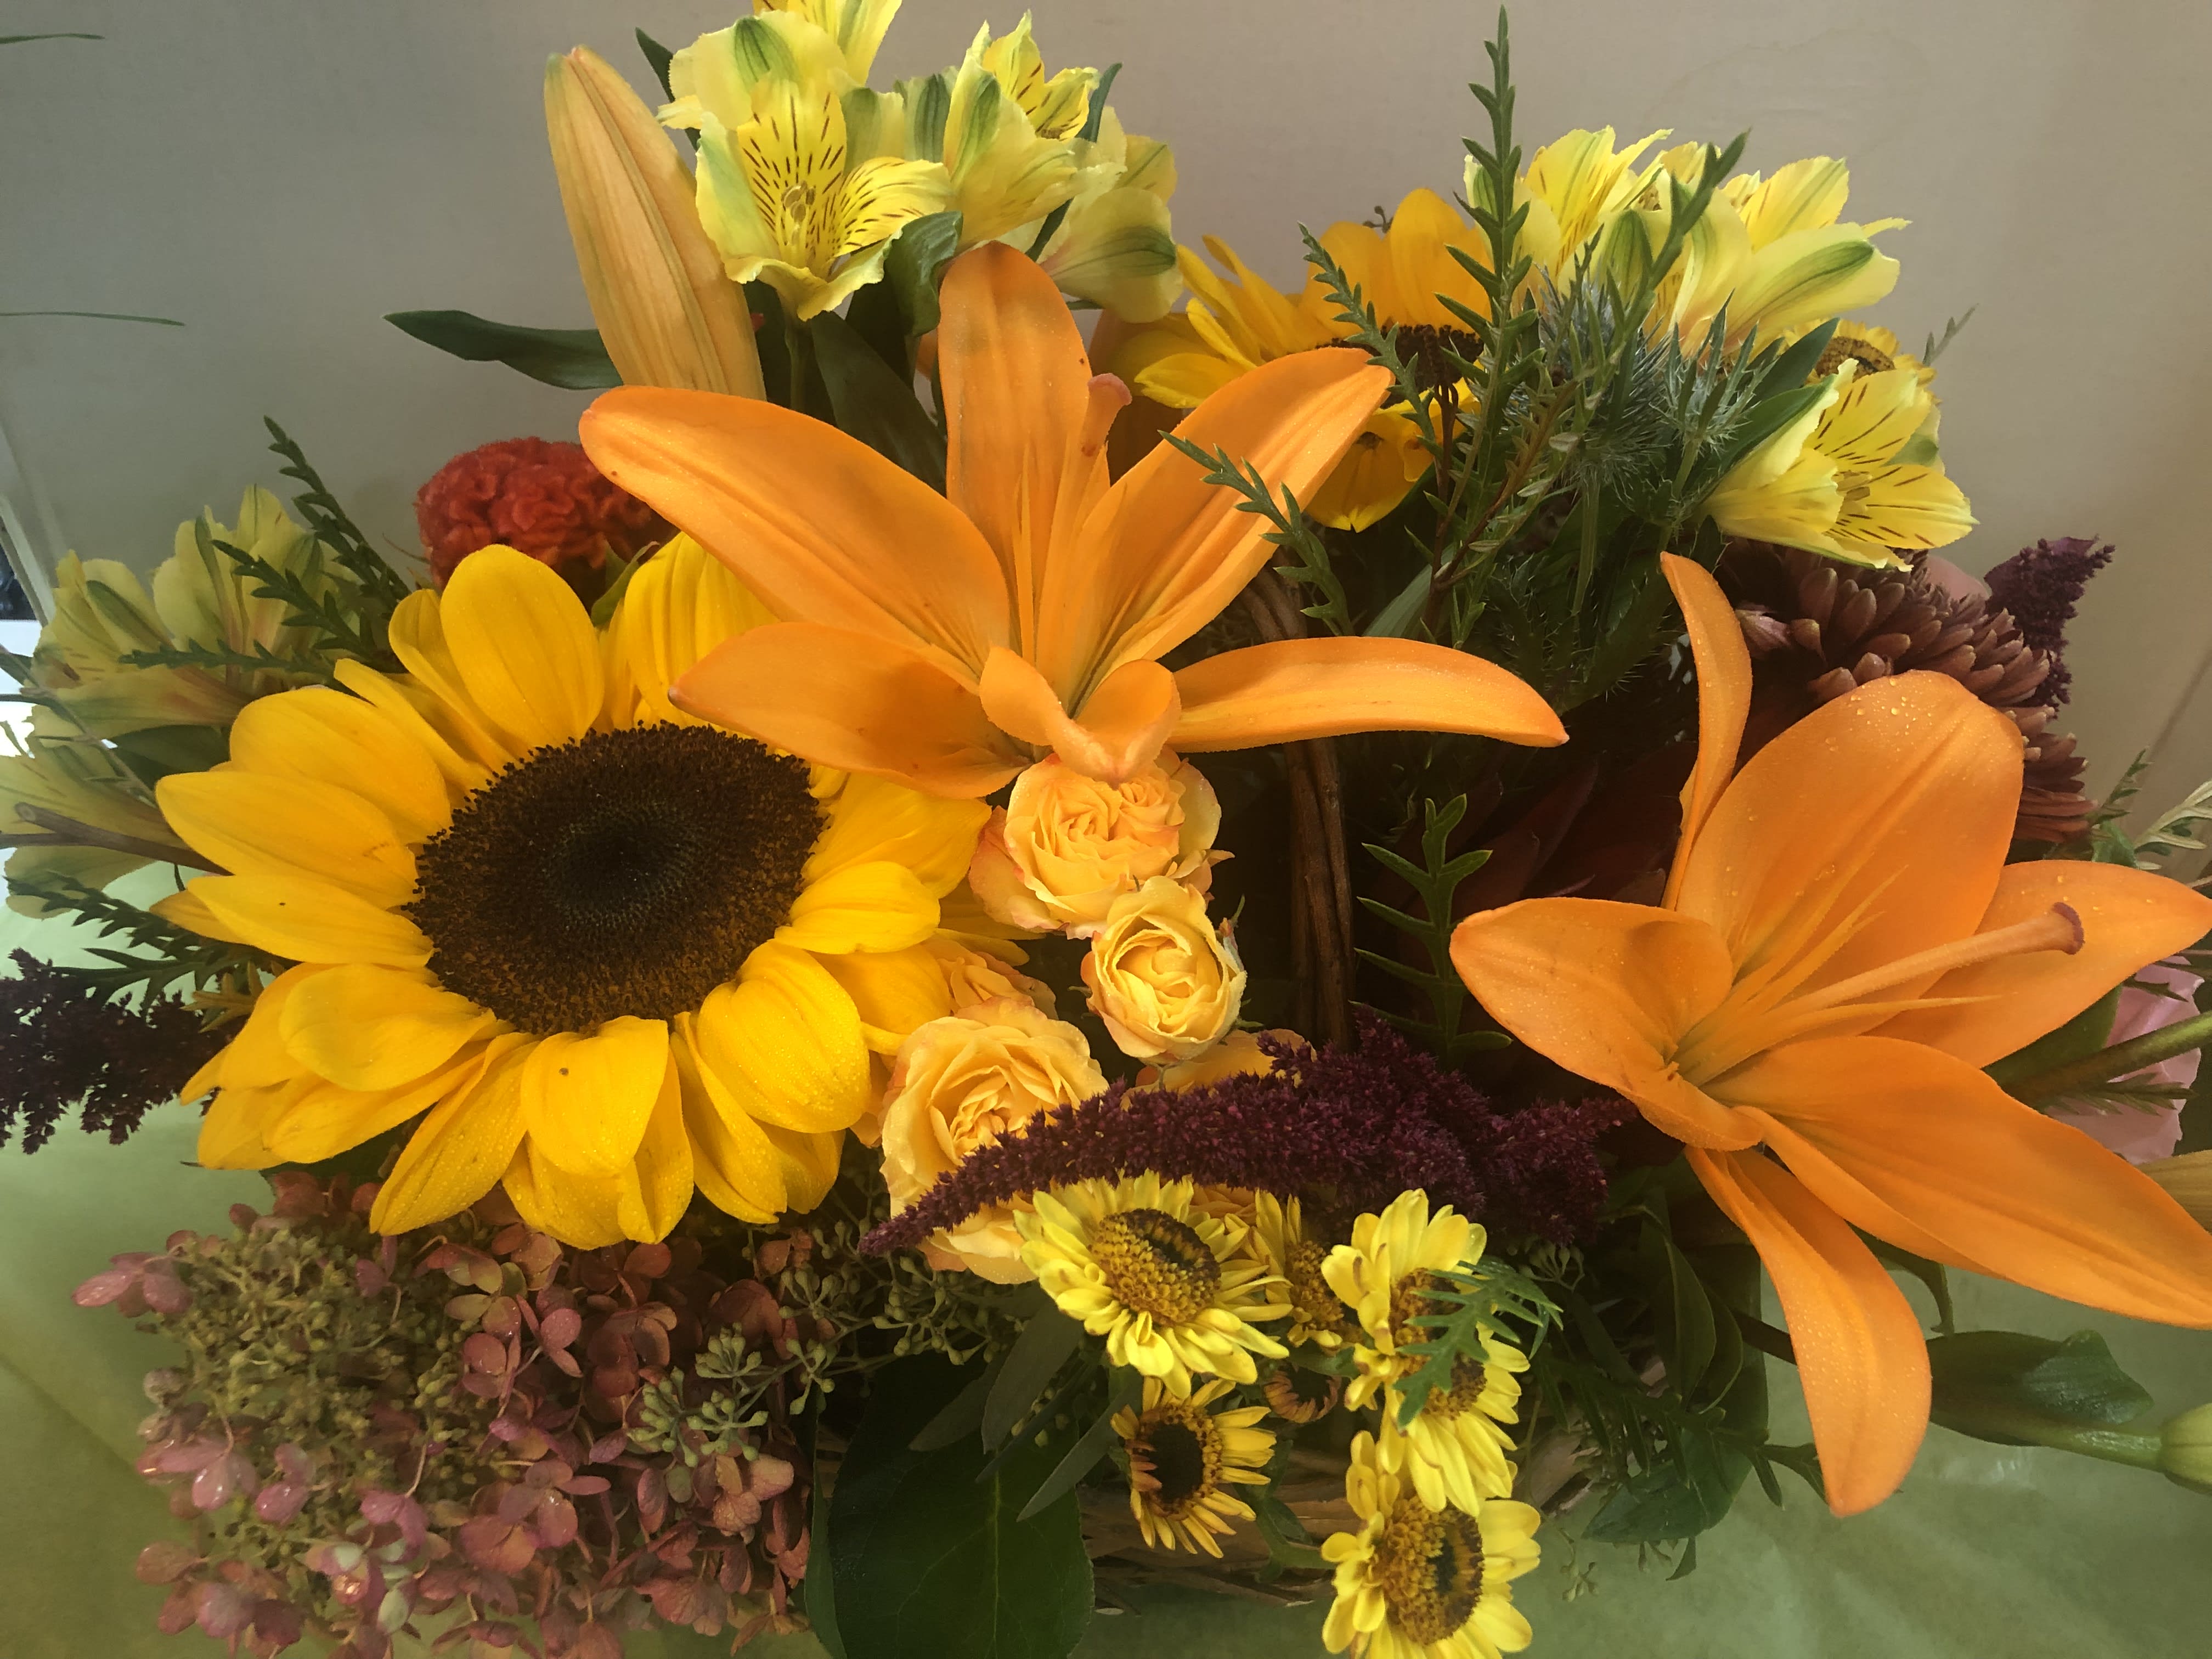 Autumn  Seasonal Centerpiece - Sunflower, Lilies, Seasonal Flowers, Fancy green